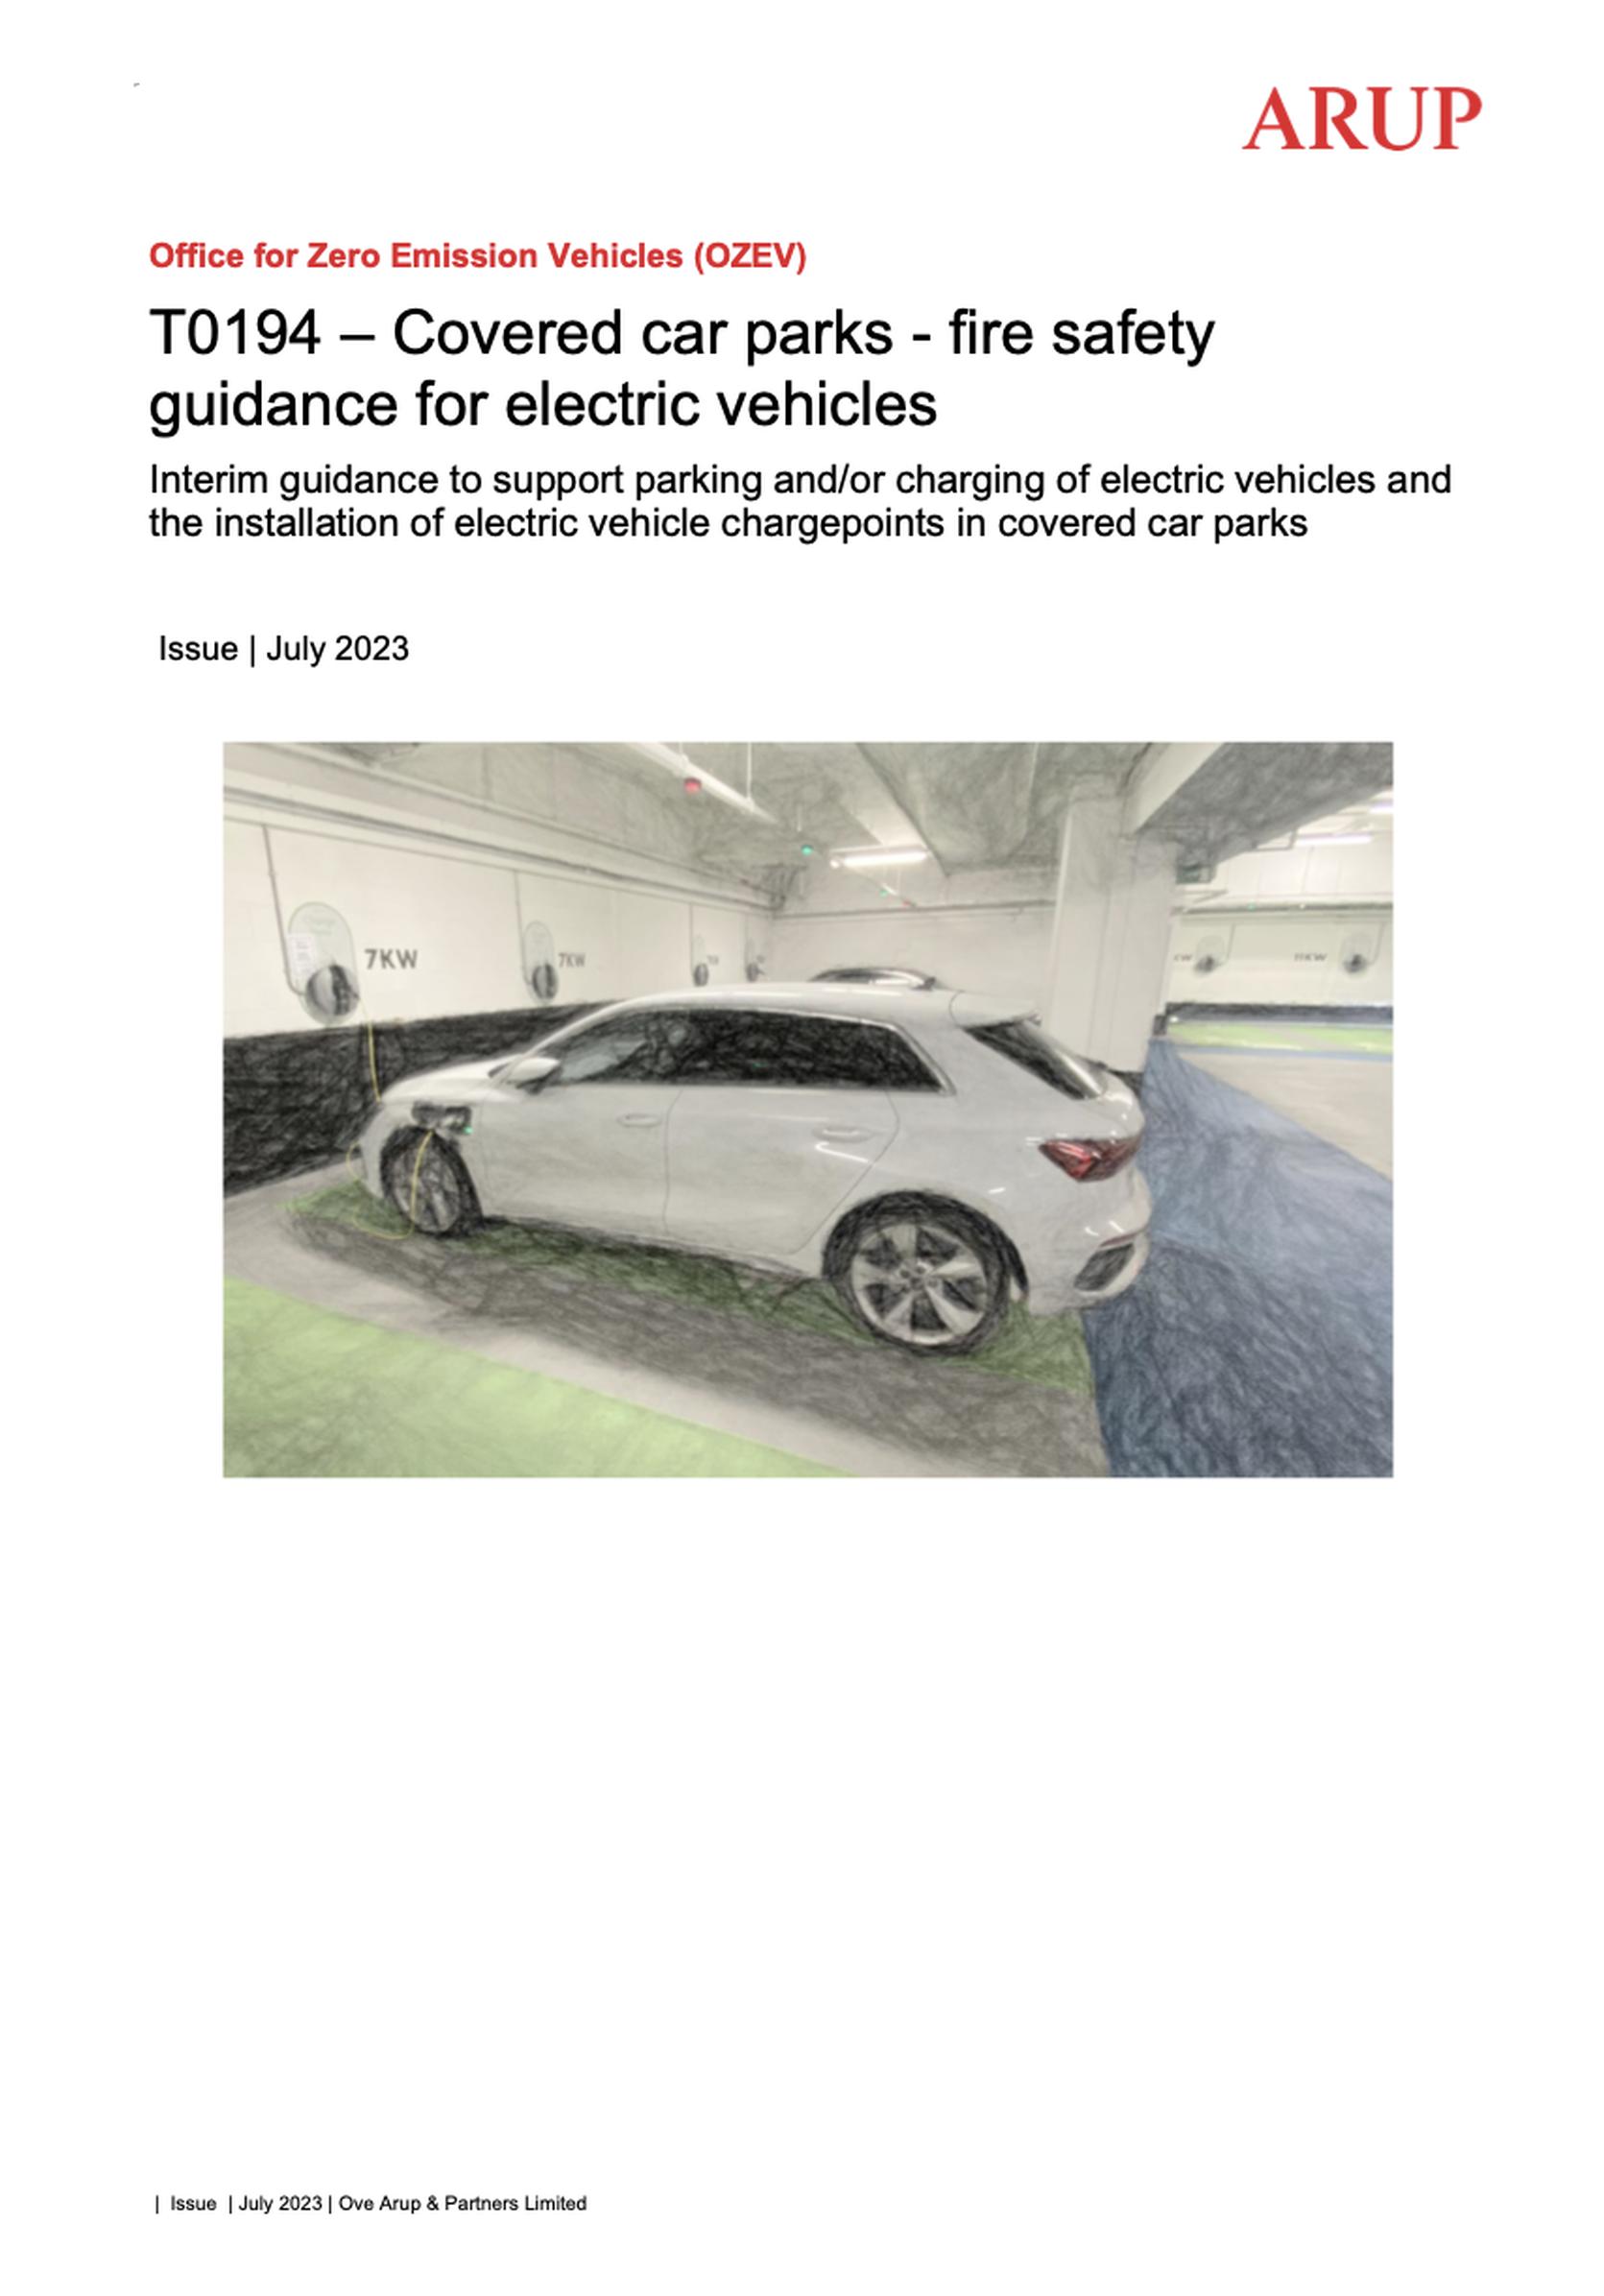 EV car park fire guidance published